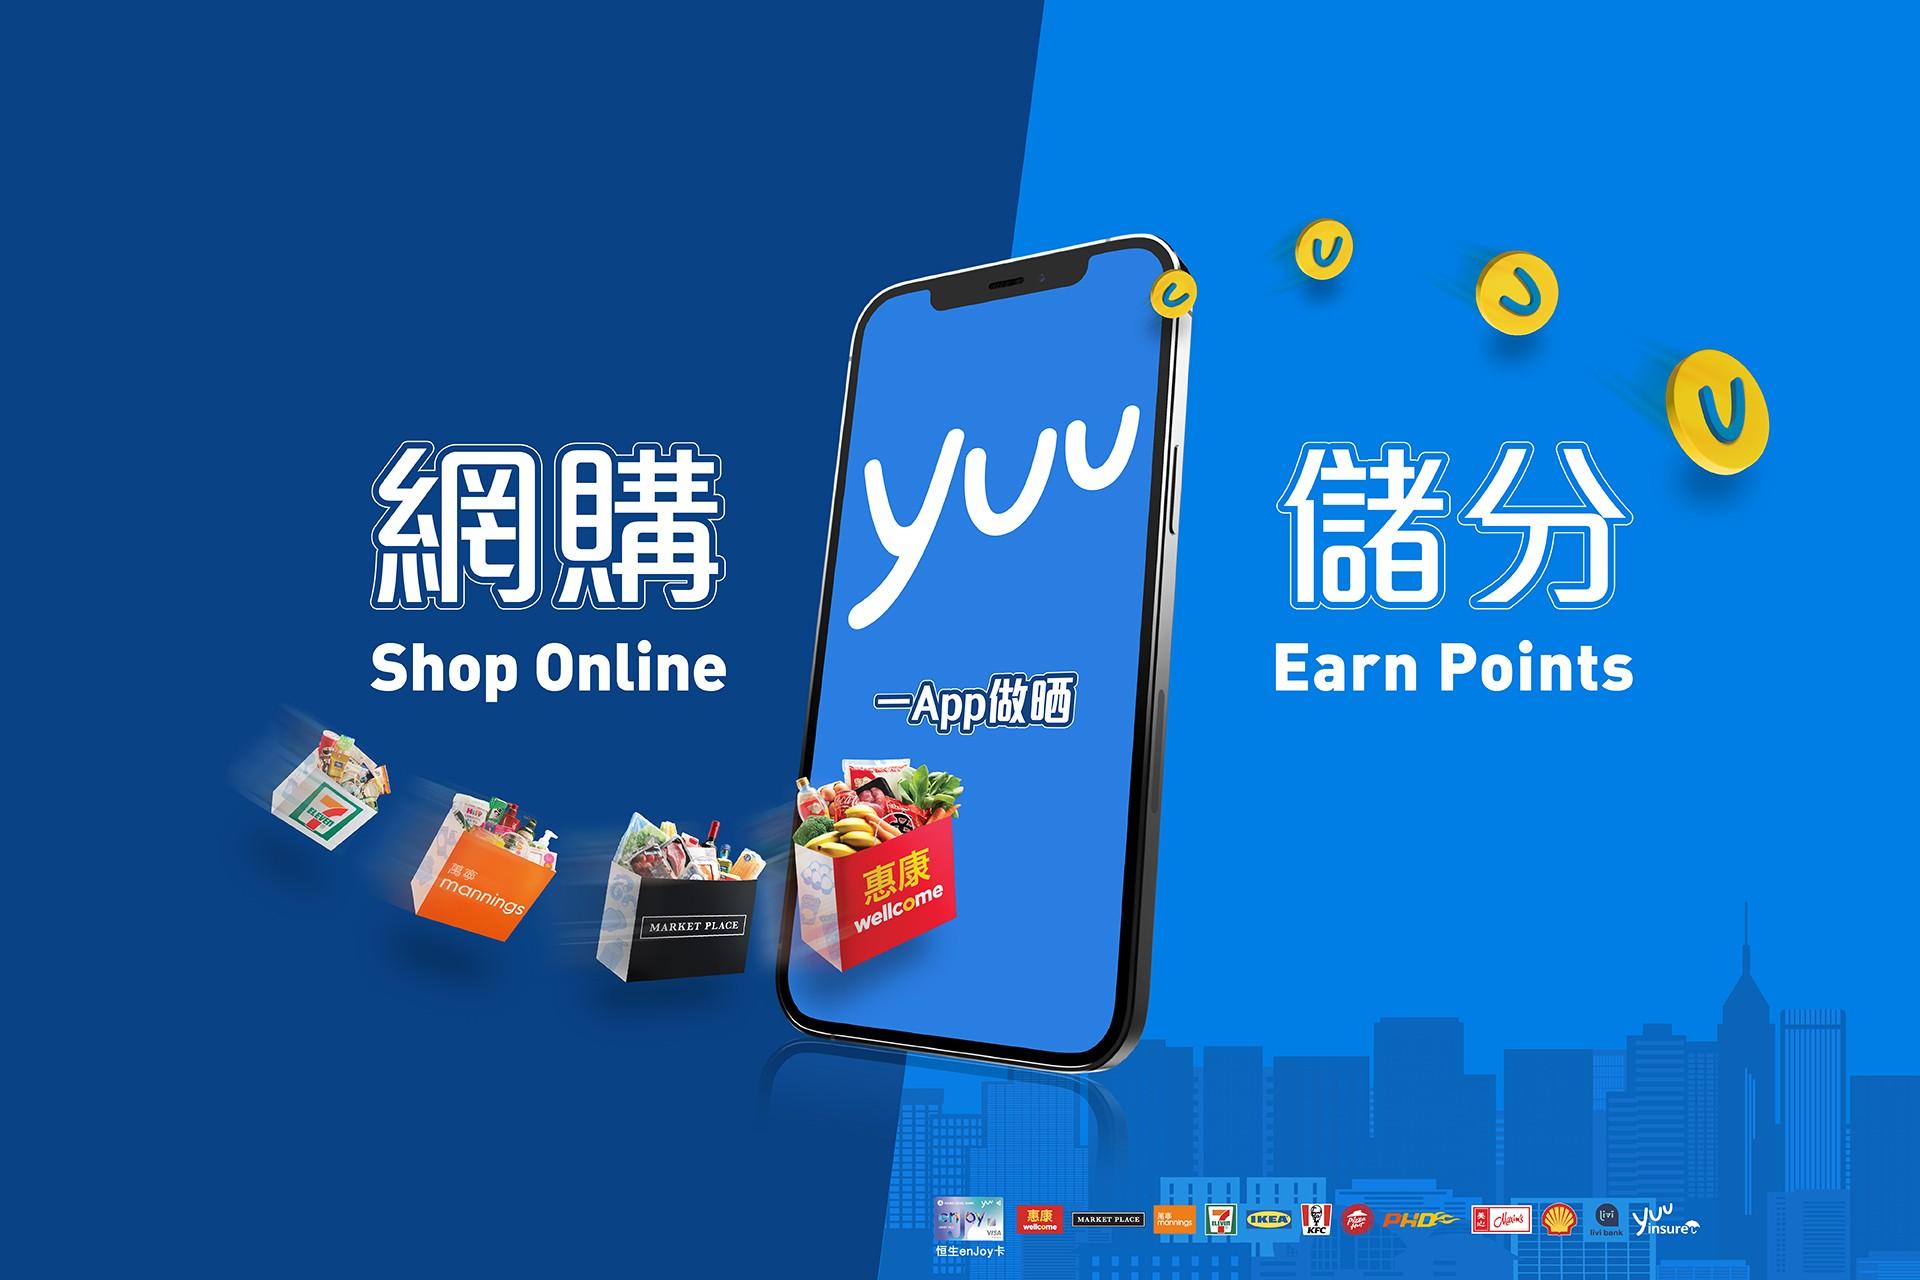 yuu - shop online, earn points